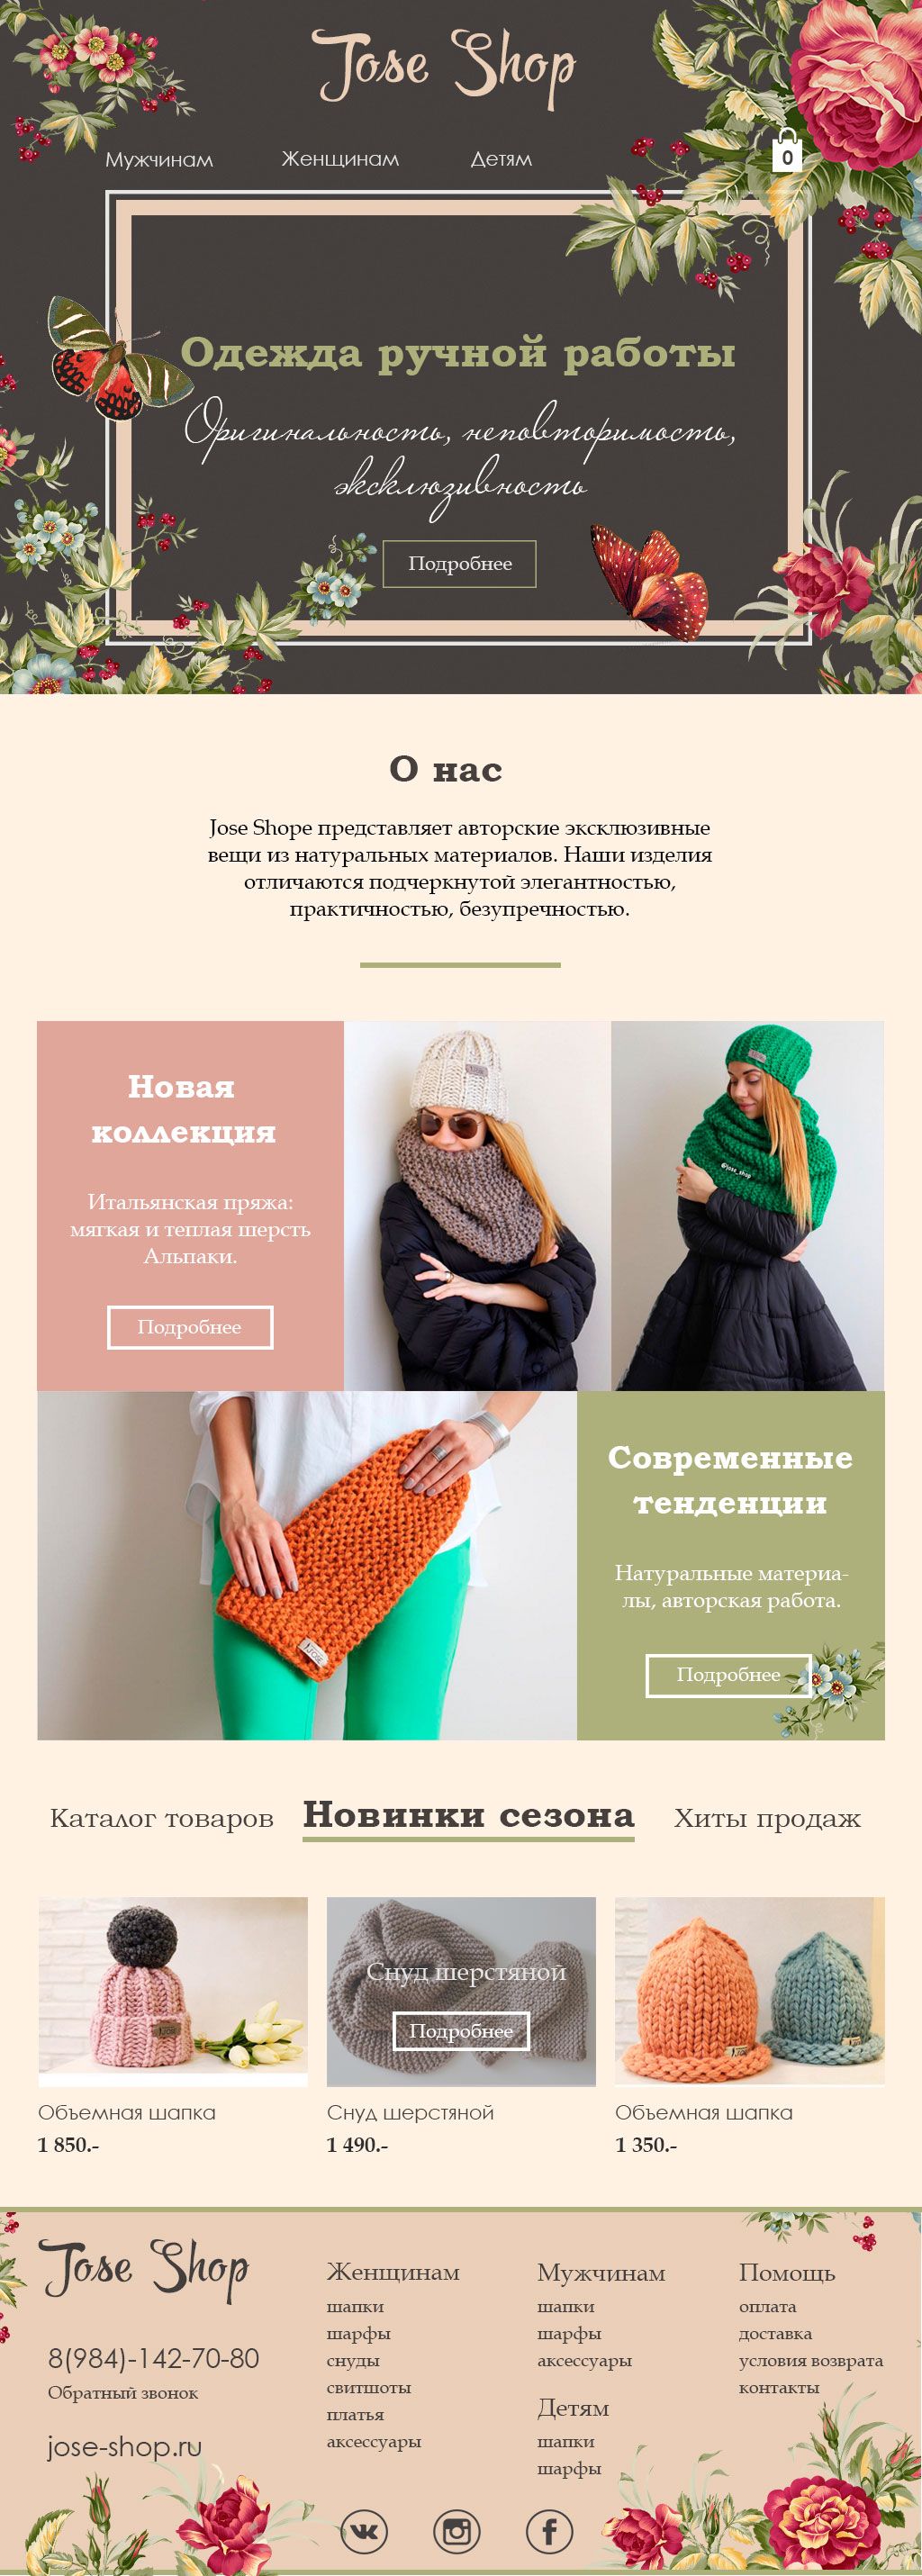 Веб-сайт для Jose-Shop.ru - дизайнер sereda_anna